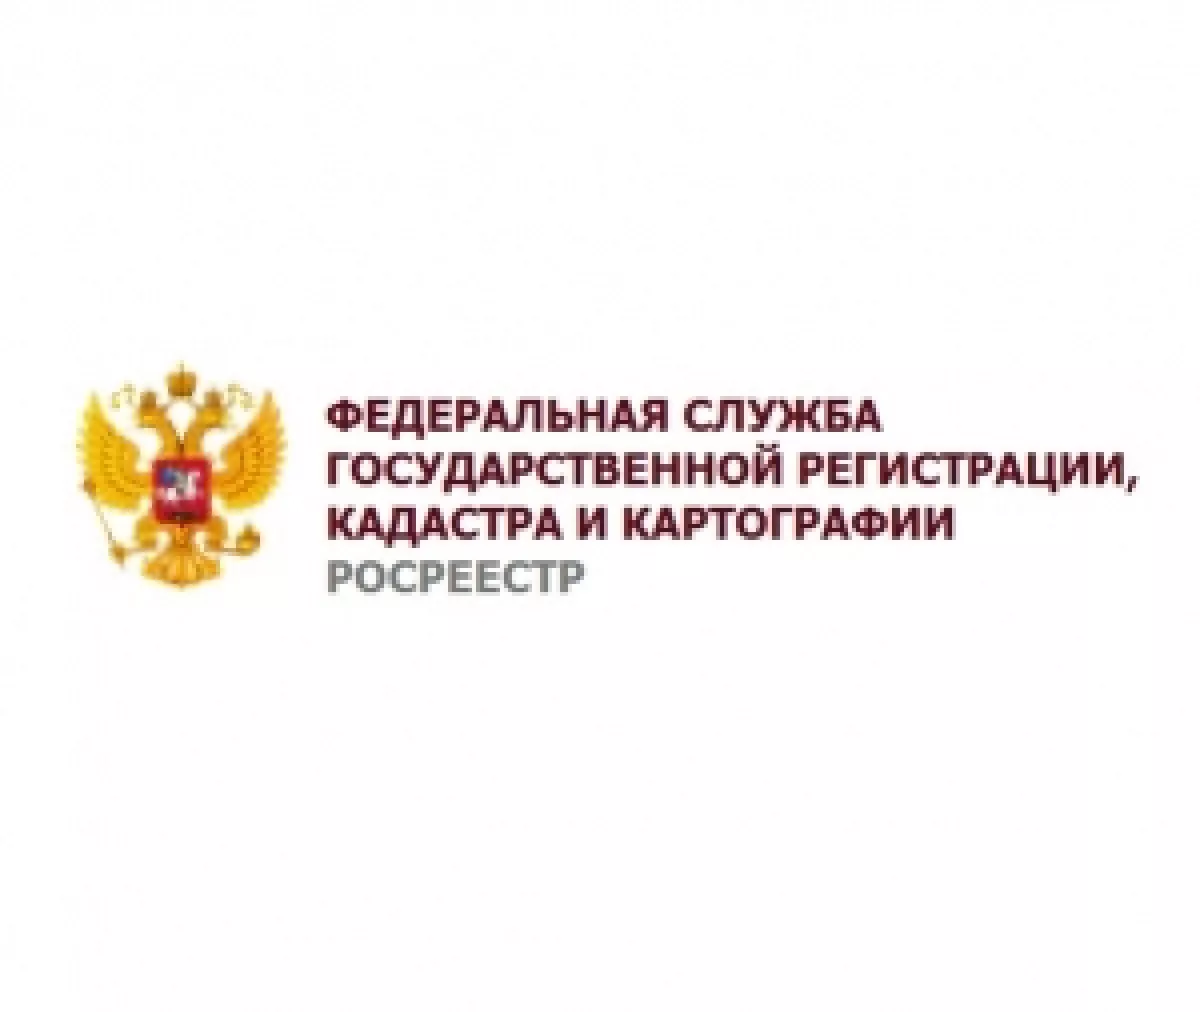 Ru сайт федеральной службы государственной